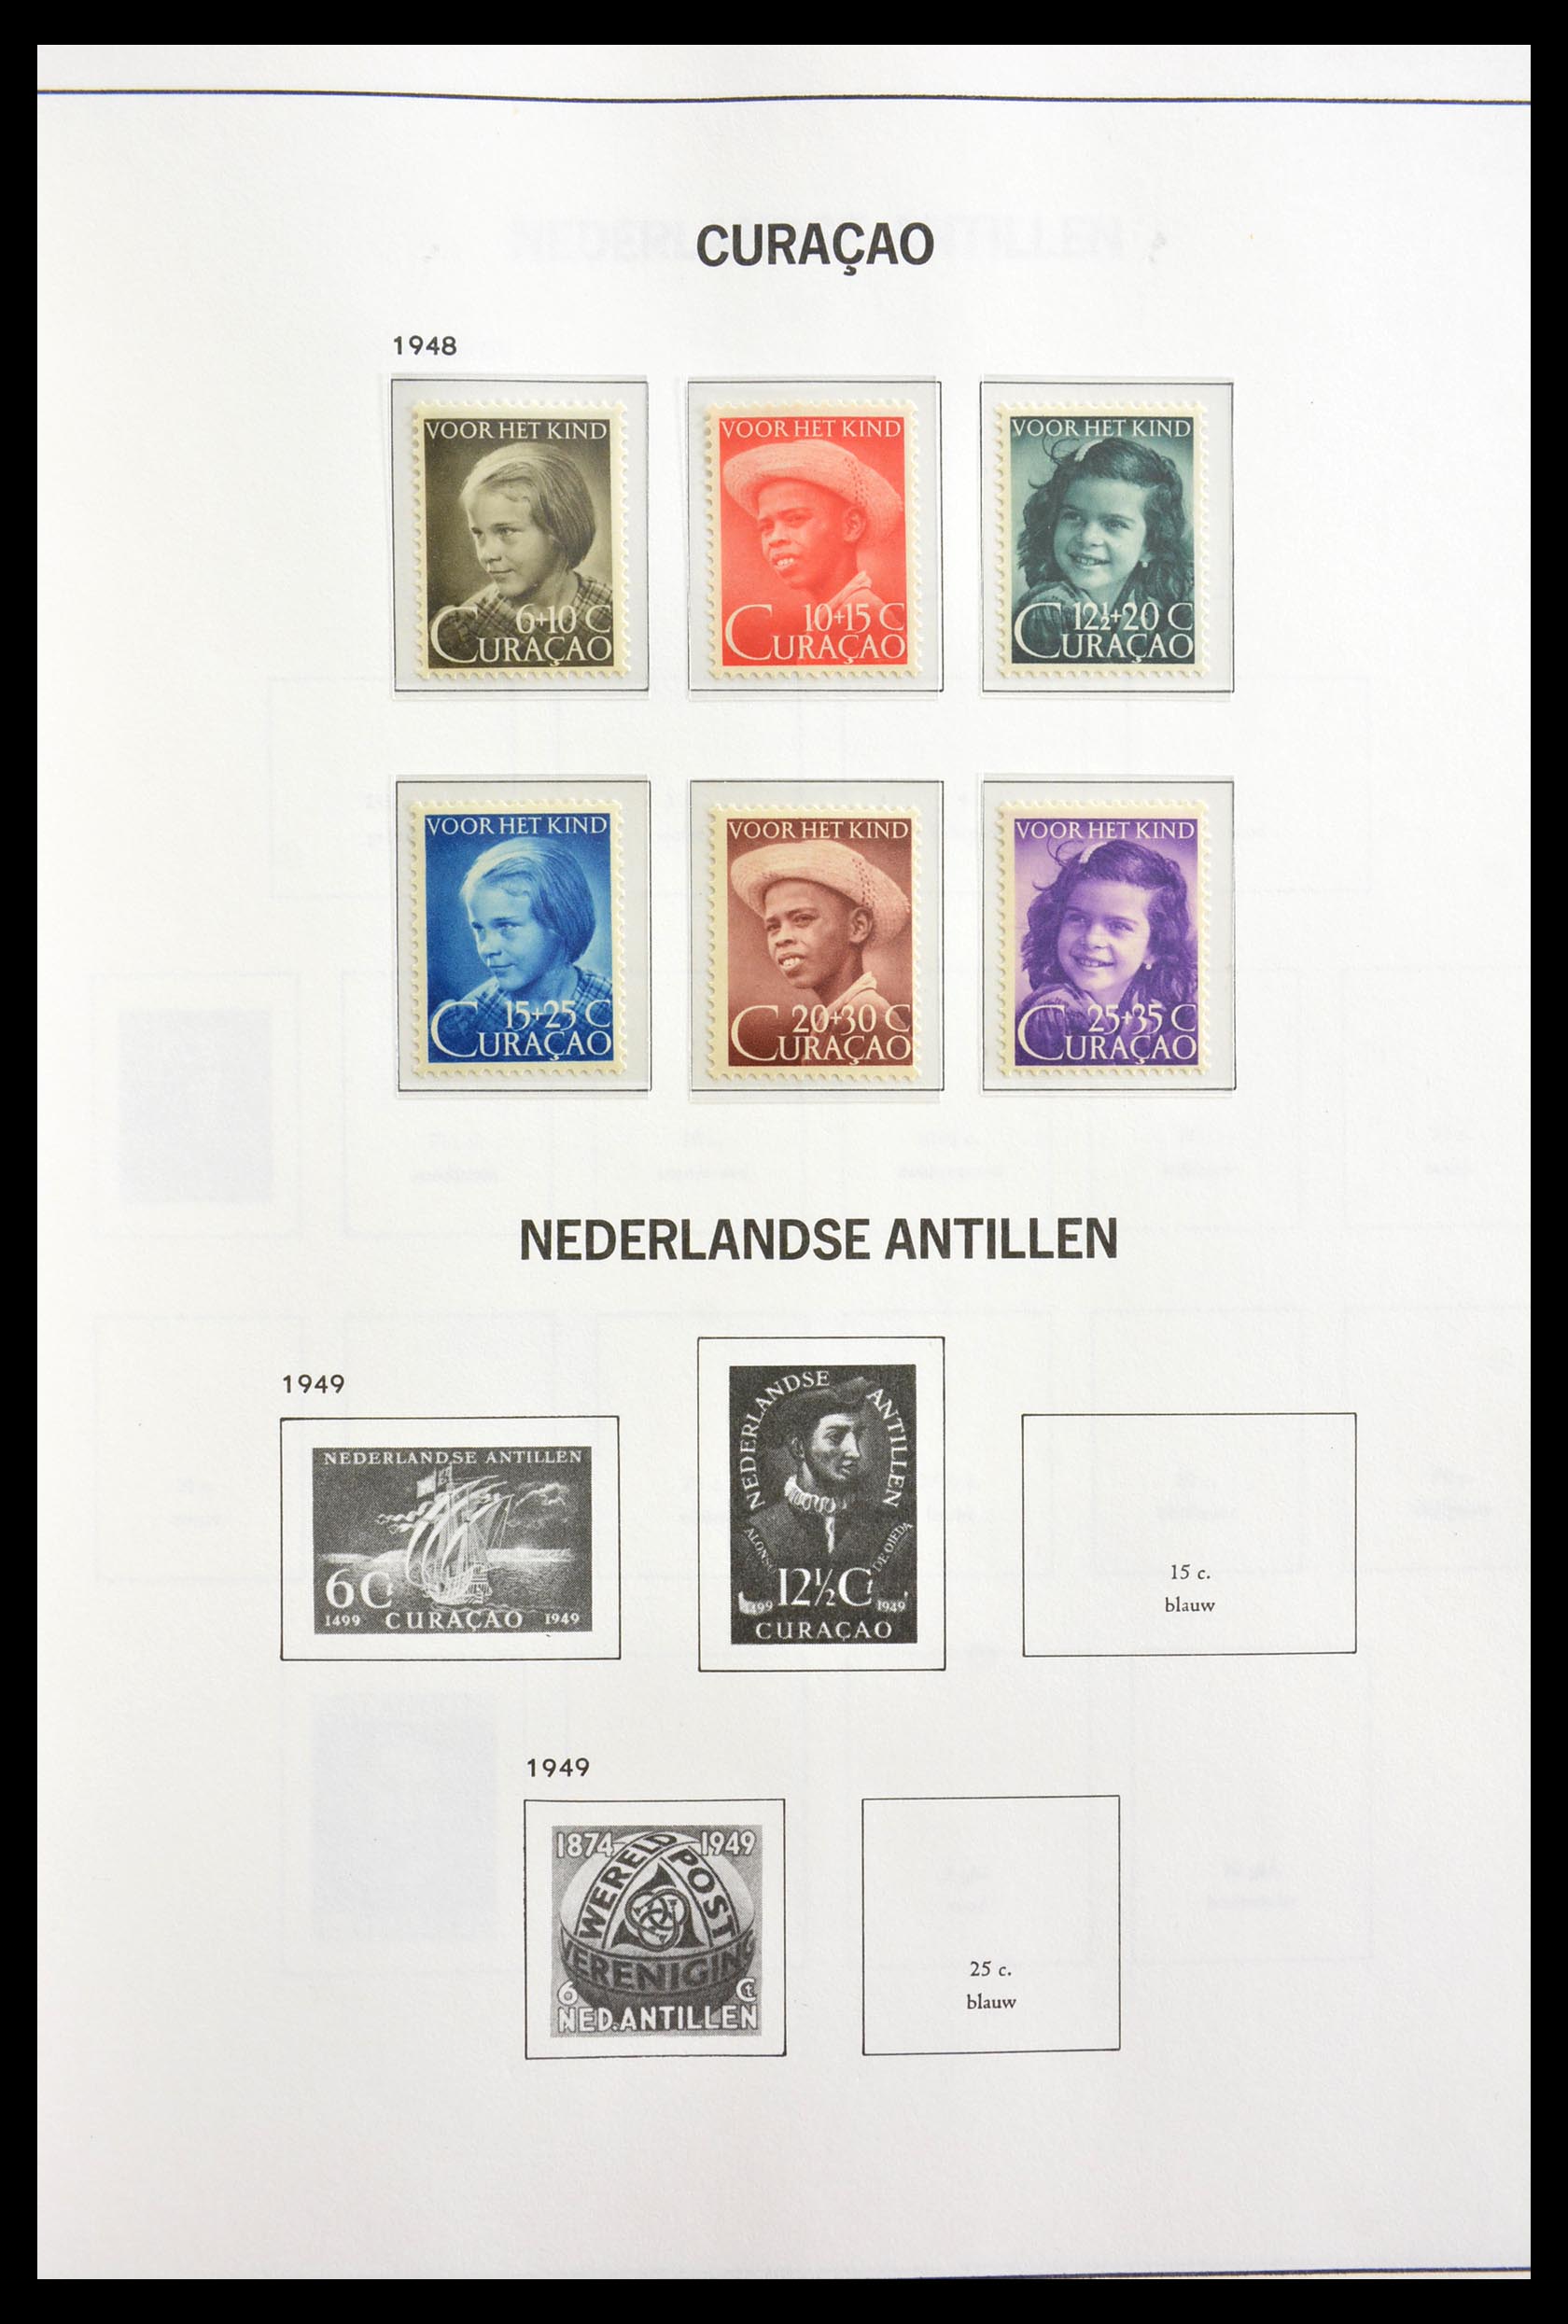 29193 005 - 29193 Netherlands Antilles 1953-1999.